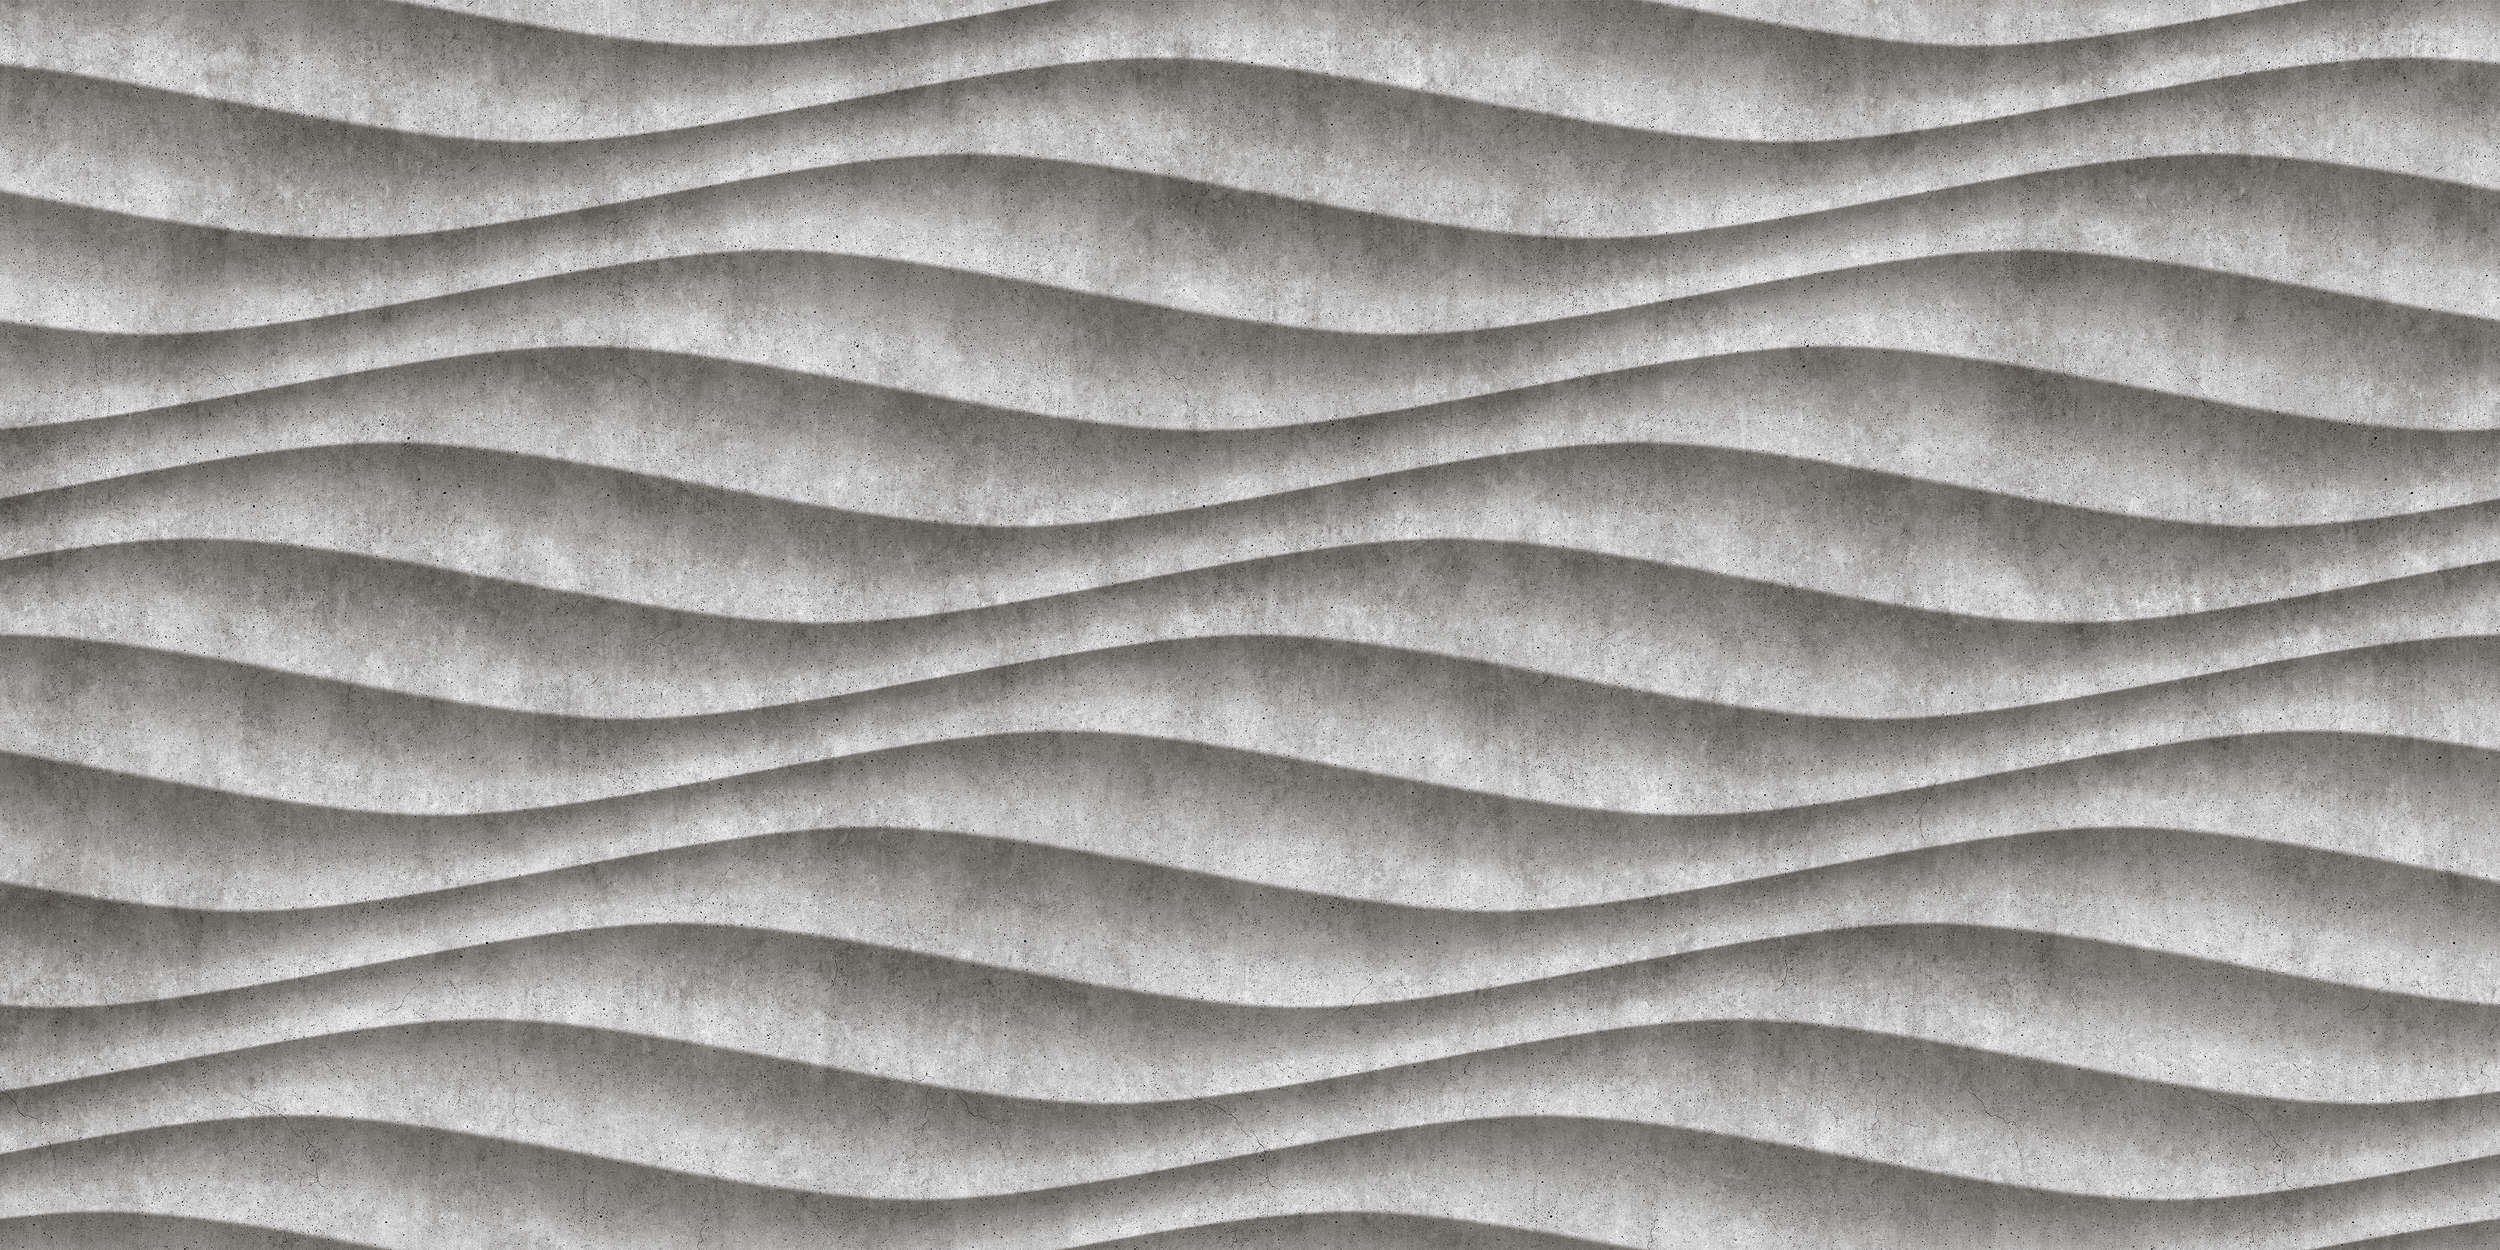             Canyon 2 - Cool 3D Concrete Waves Wallpaper - Grey, Black | Textured Non-woven
        